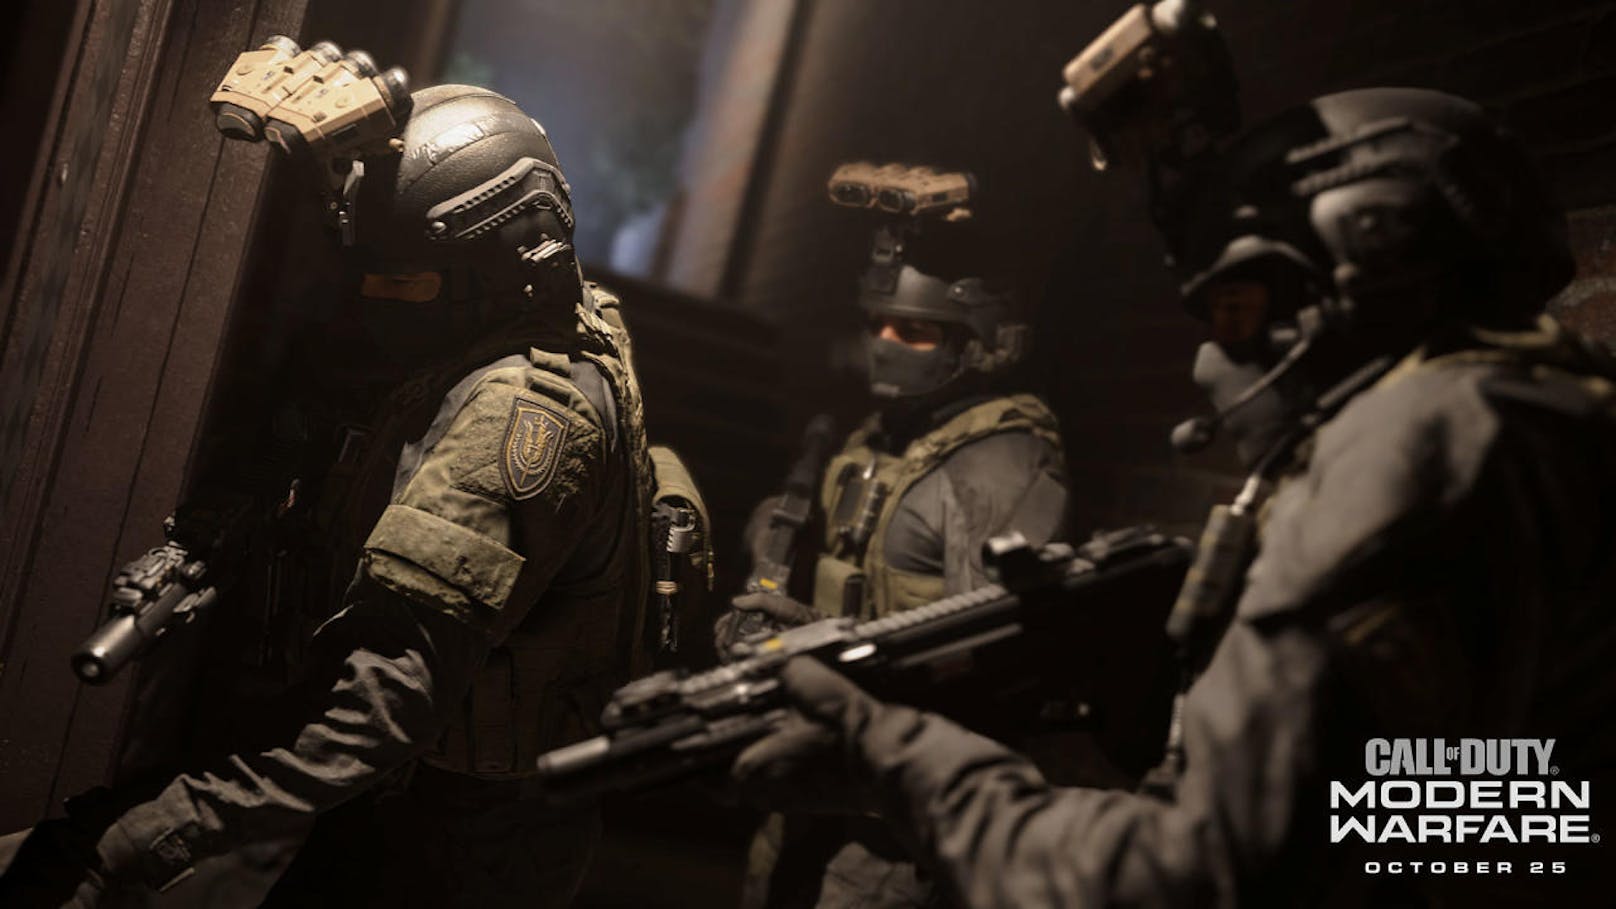 Wie das Originale "Modern Warfare" hat auch die 2019er-Version eine abwechslungsreiche Handlung und ebensolche Missionen zu bieten. Wieder gibt es spielerisch und storymäßig die ruhigen Momente in denen Schleichen und Beobachten im Vordergrund steht, aber genauso die Ballergefechte.